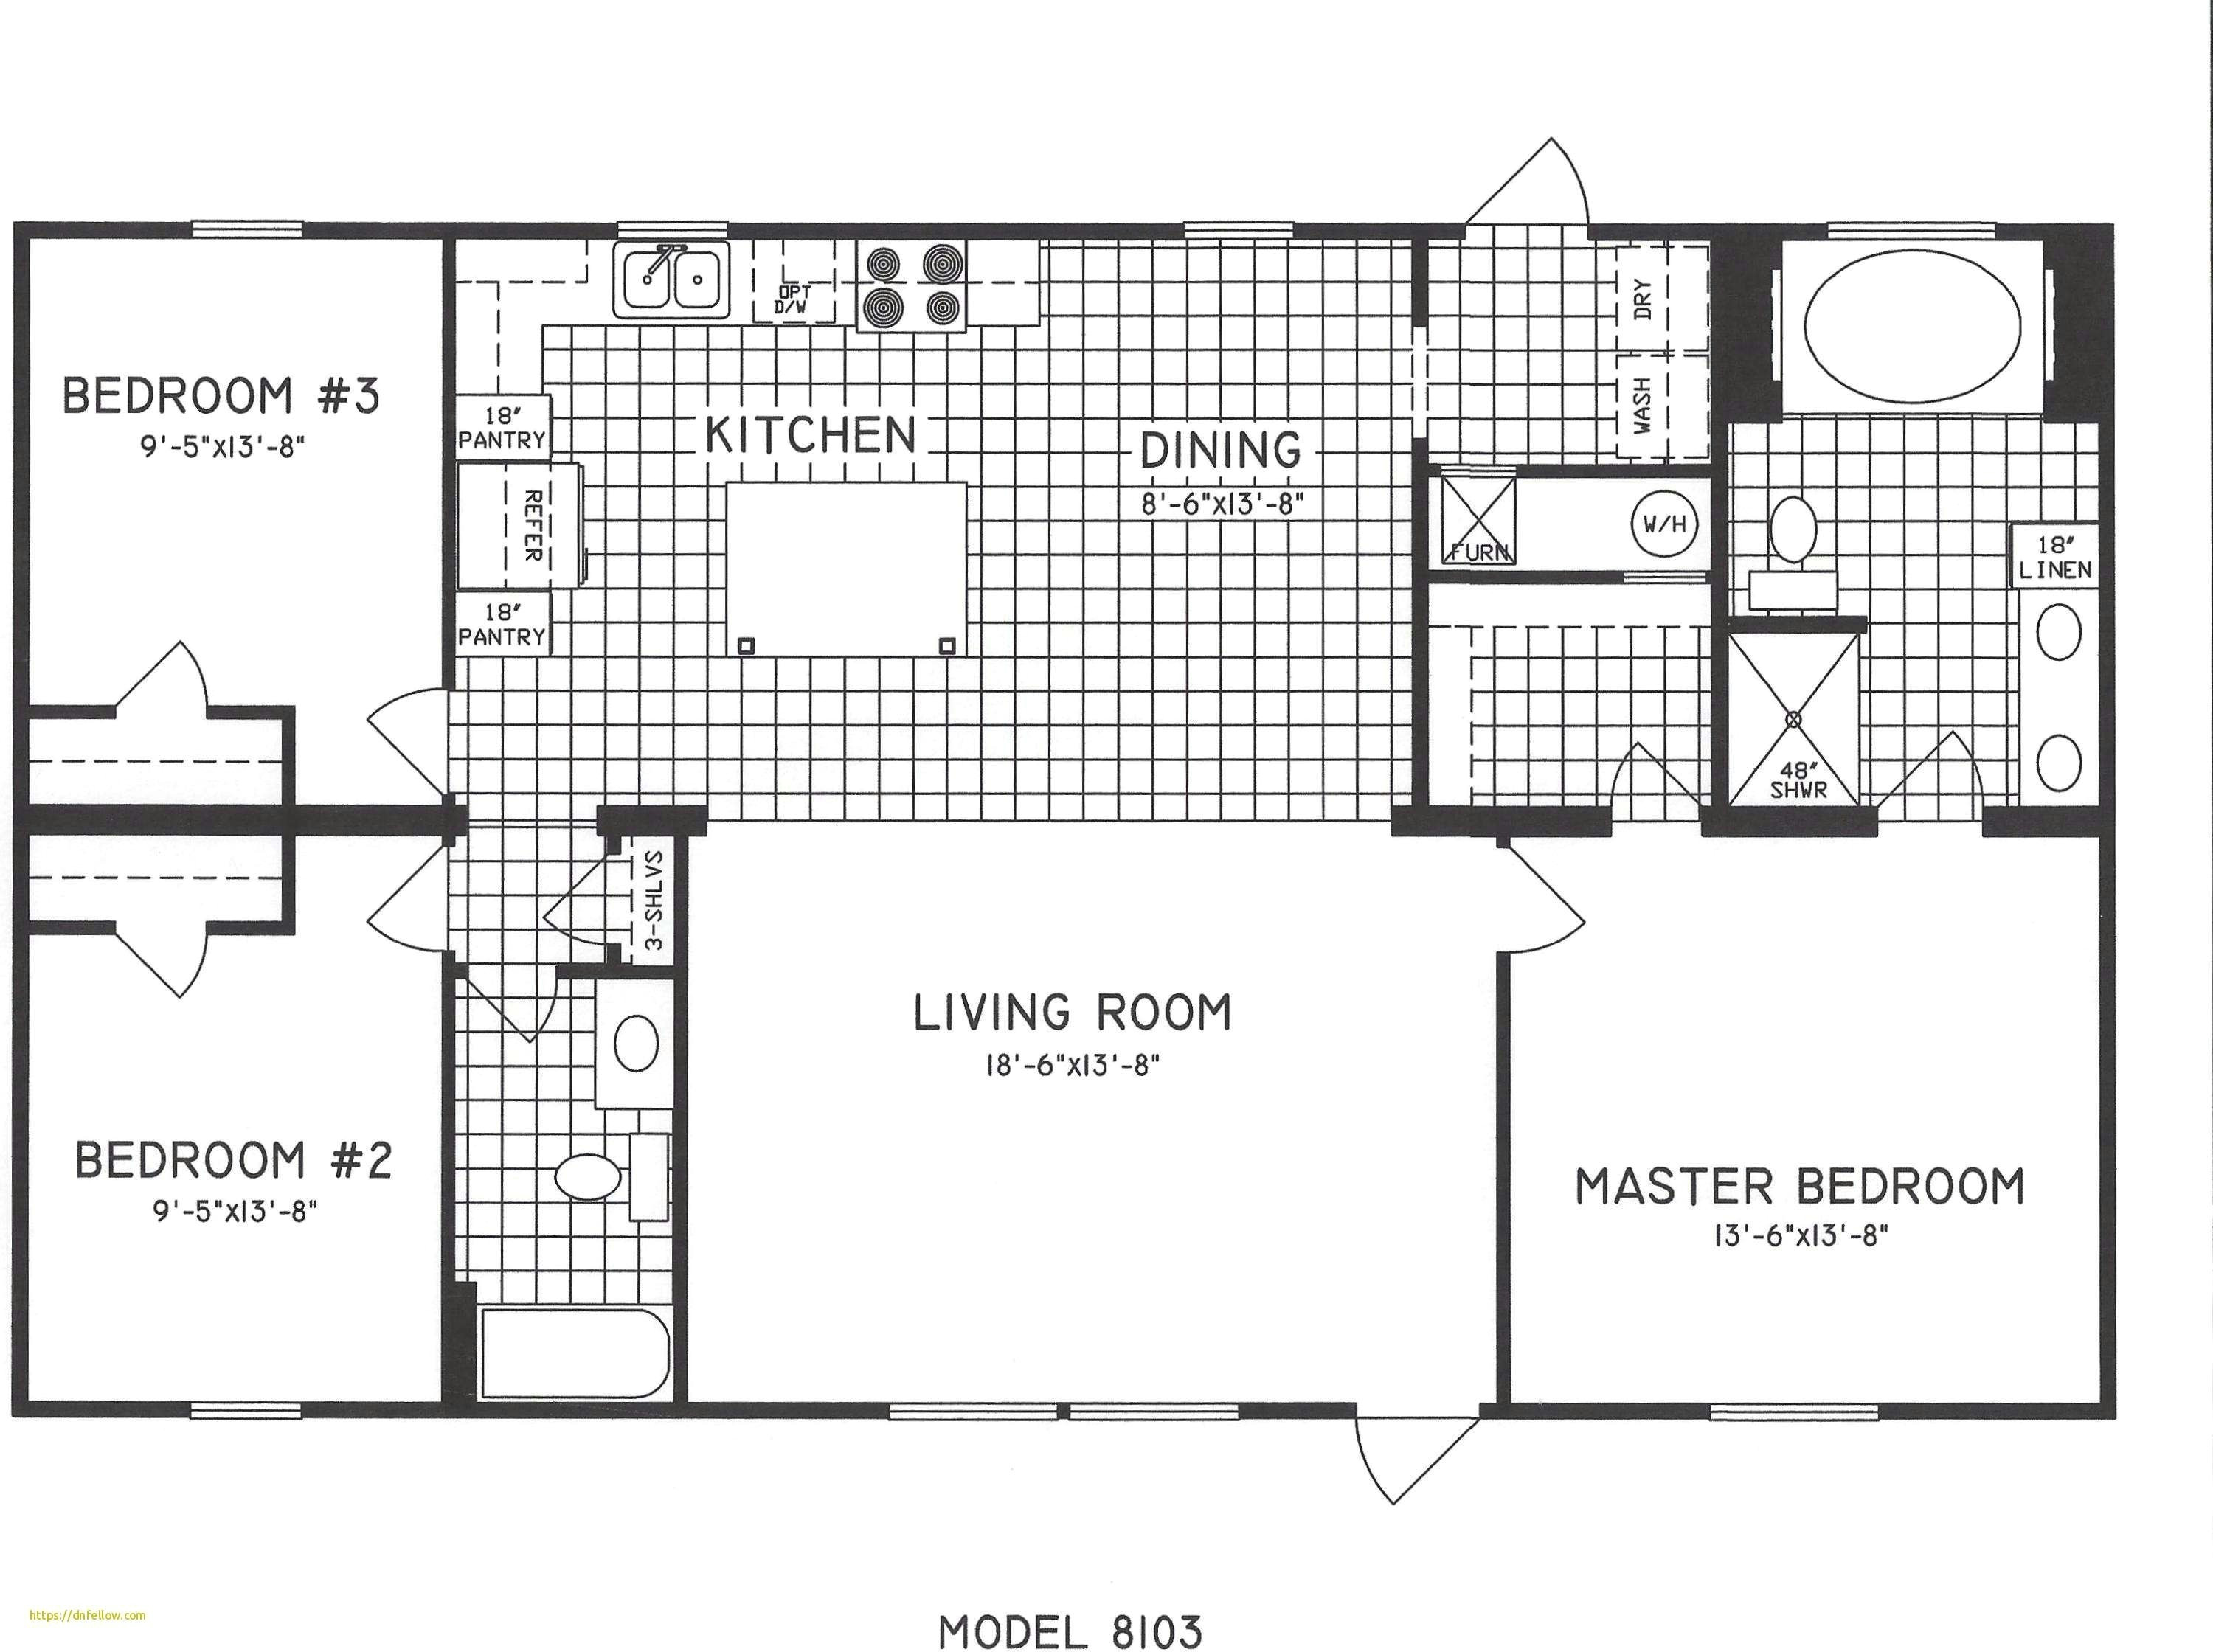 Drawing or Drafting 27 Elegant Floor Plan Drafting Gallery Floor Plan Design